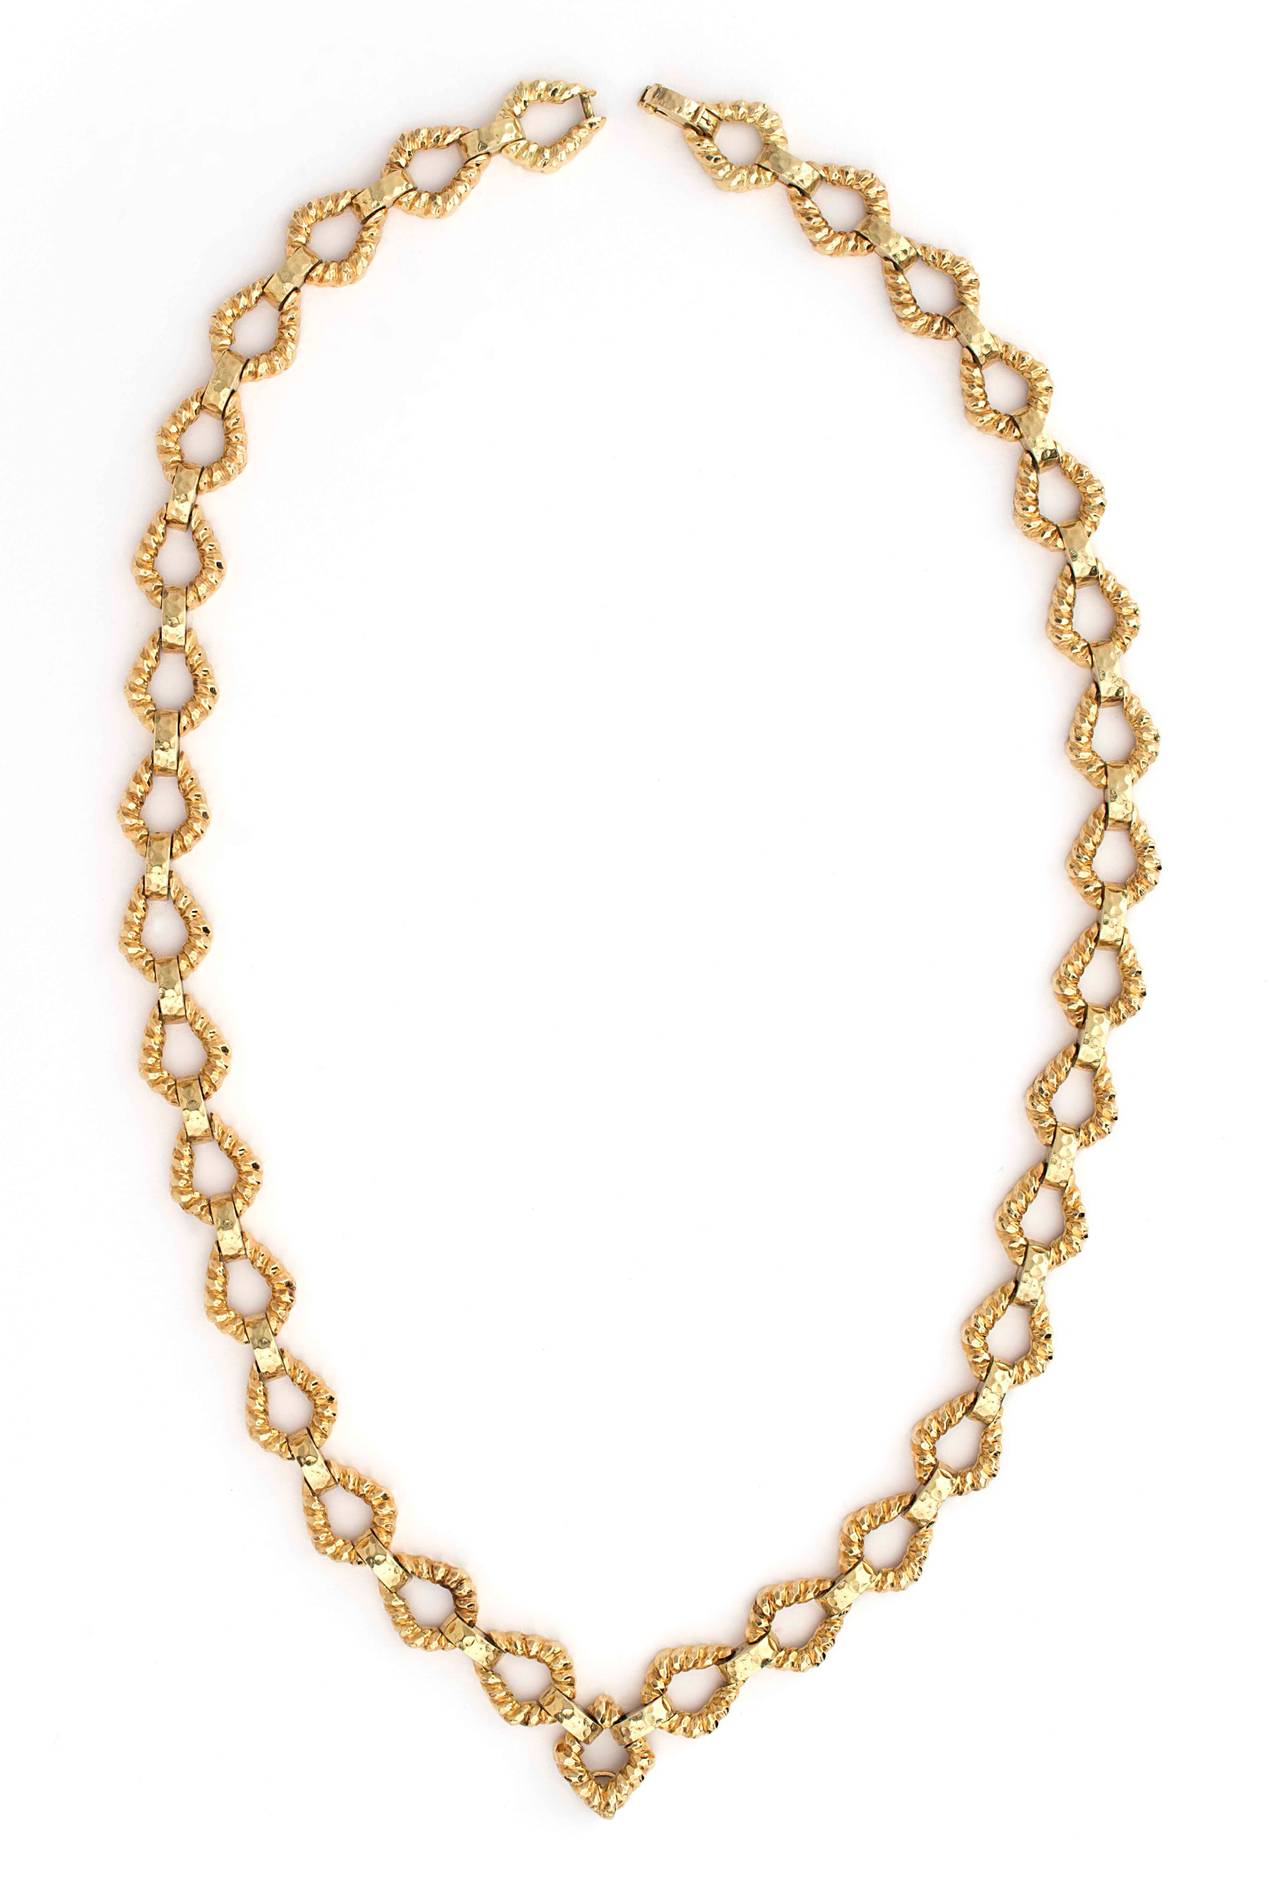 David Webb Diamond Gold Platinum Pendant Necklace Suite For Sale 1